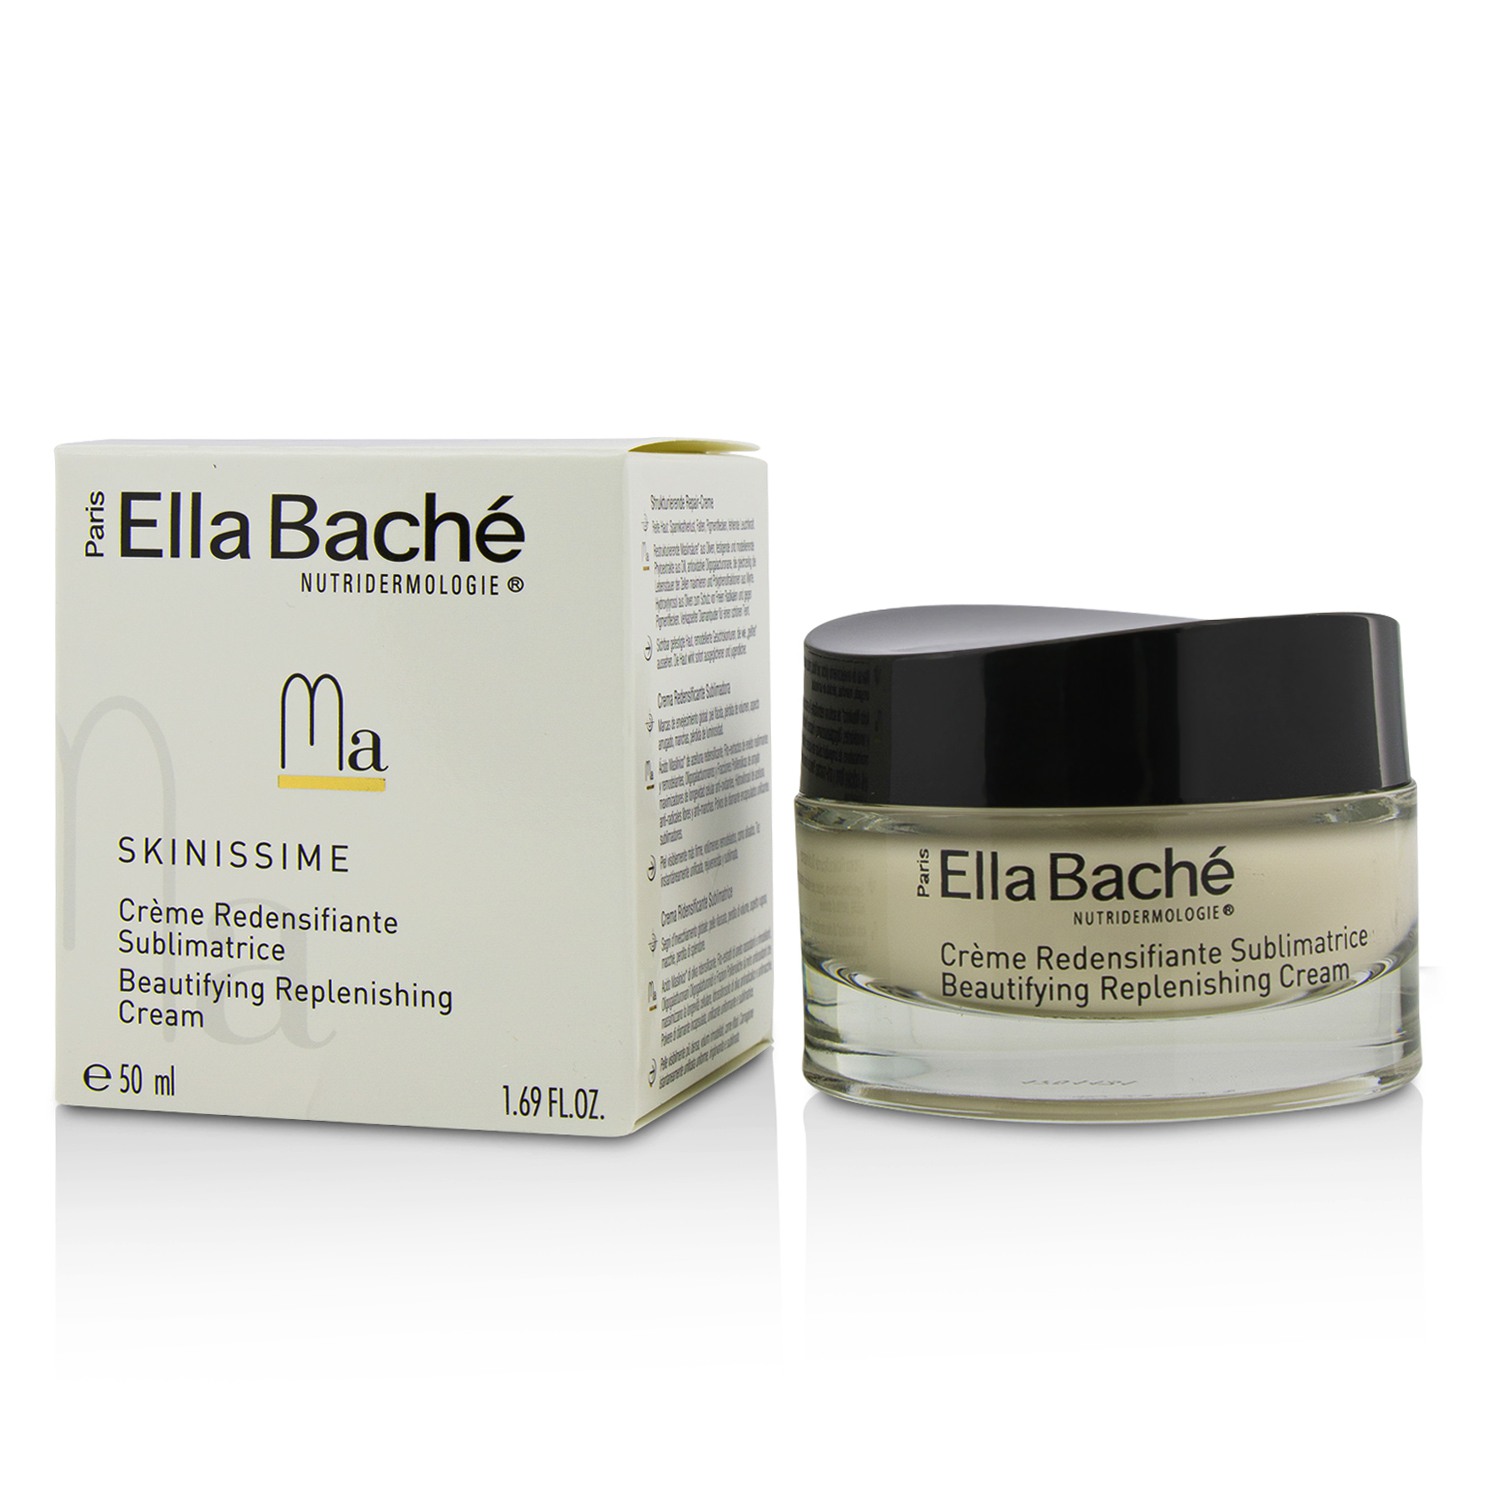 Skinissime Beautifying Replenishing Cream Ella Bache Image